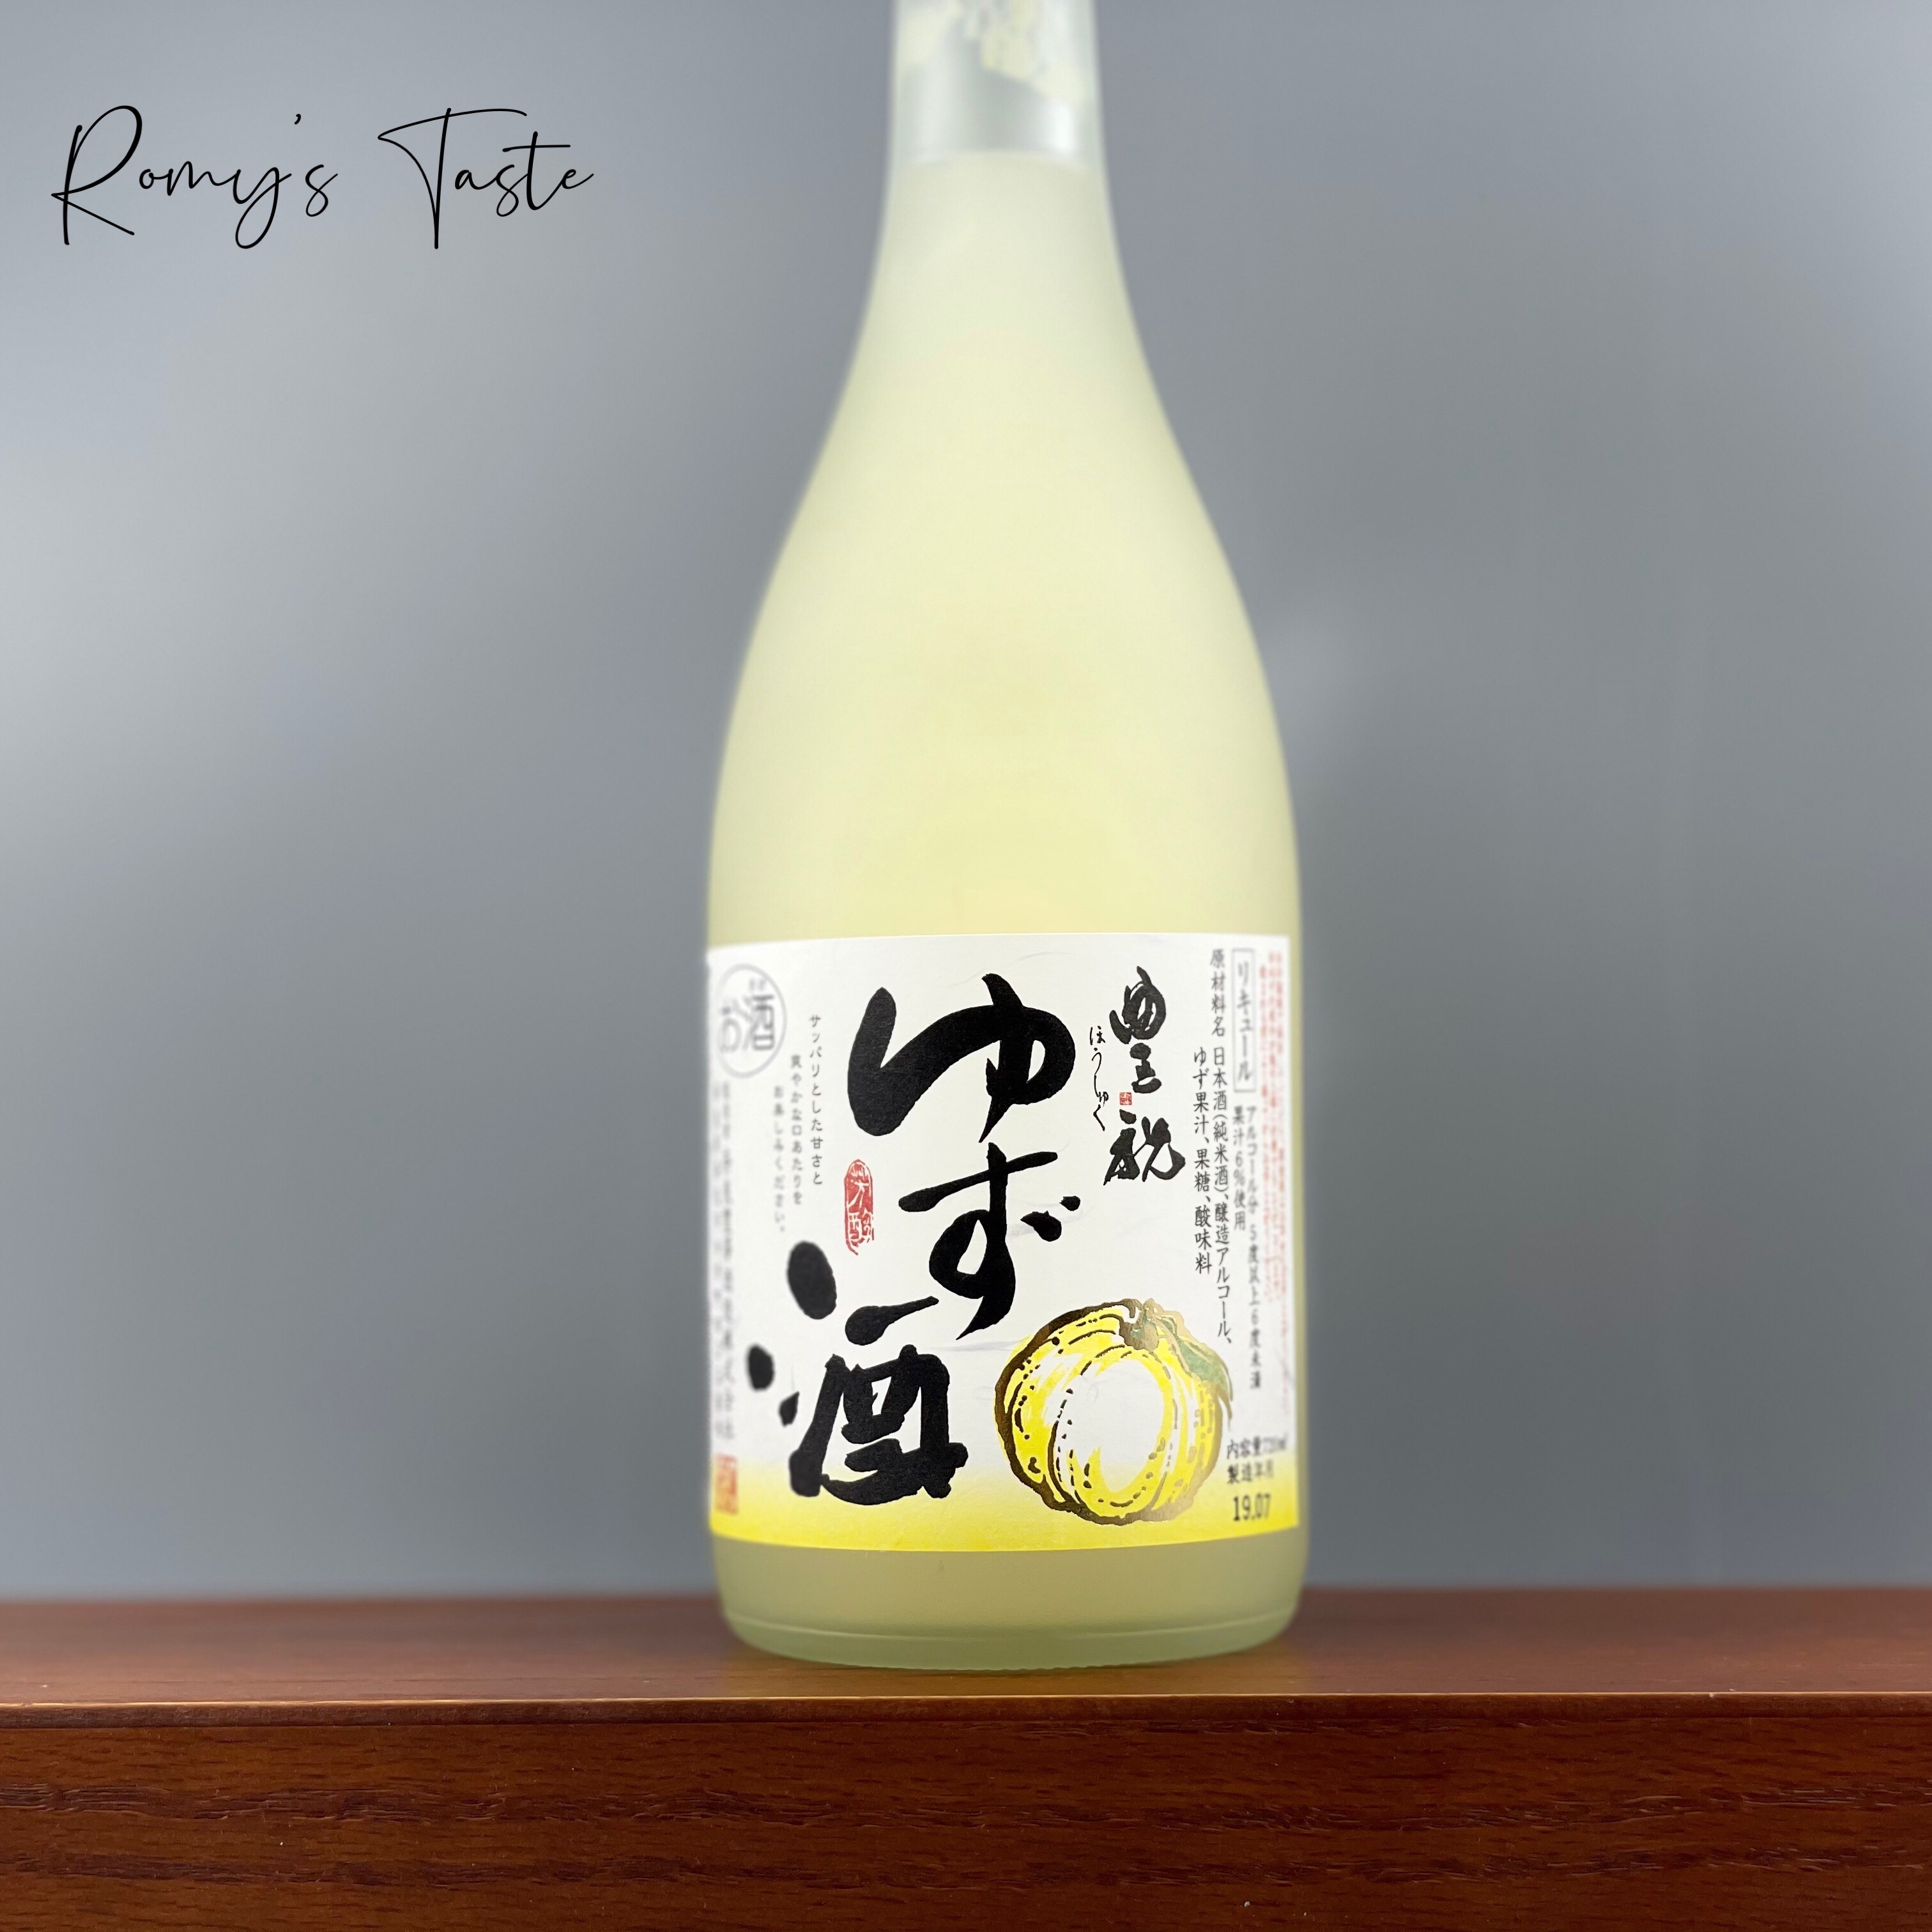 清香怡人丰祝柚子酒使用日本高知县新鲜柚子汁加冰味道更佳